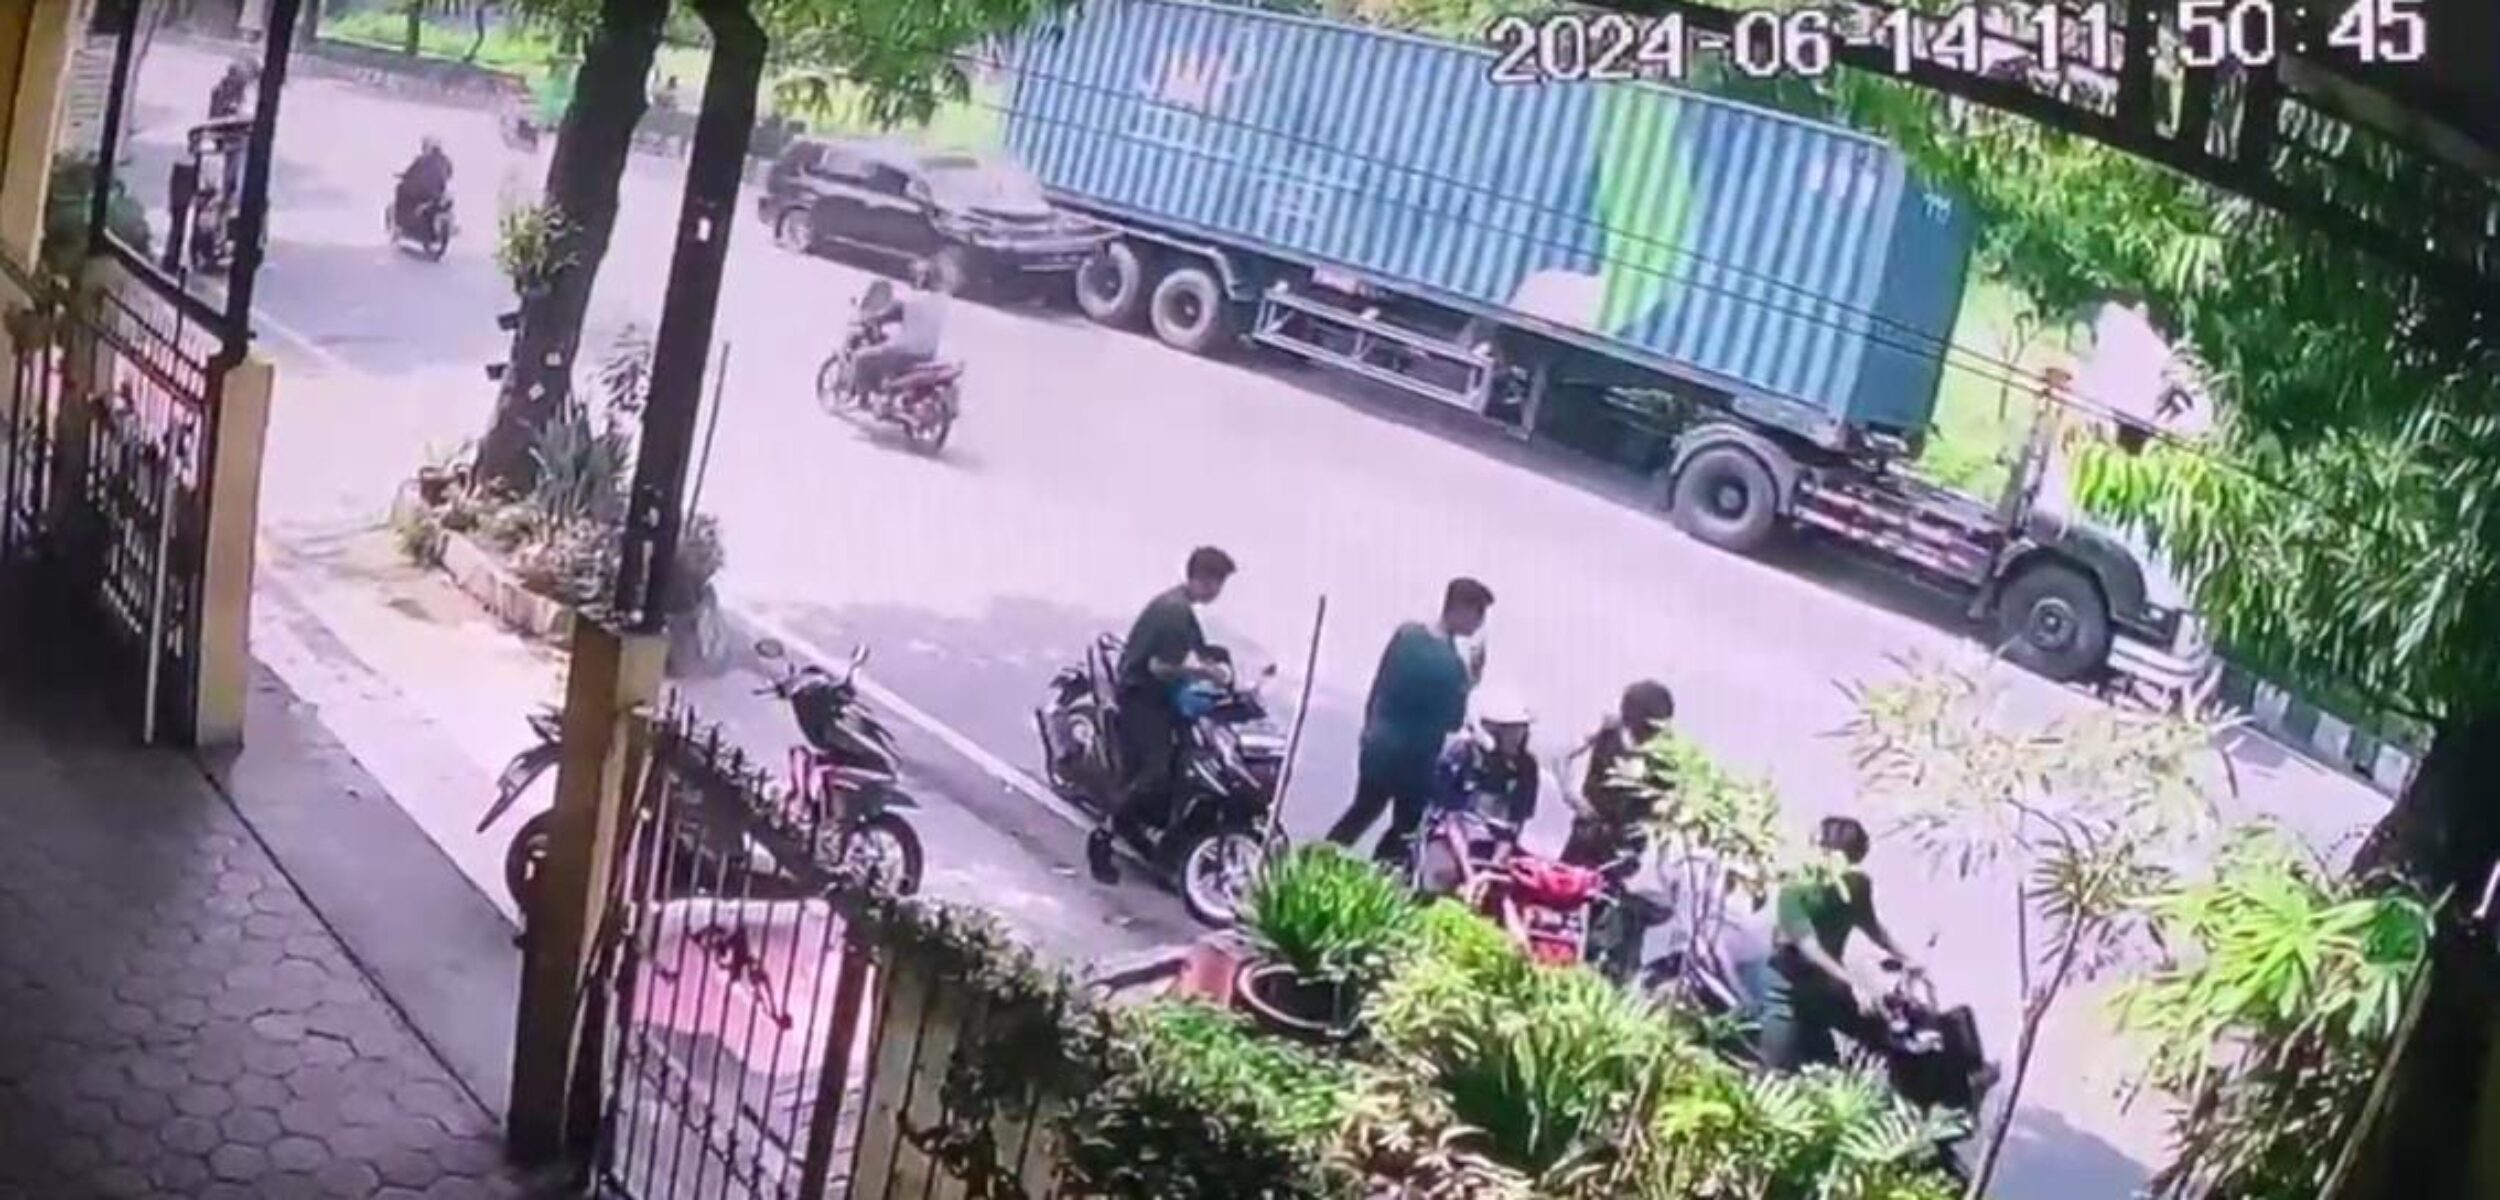 Tangkapan layar rekaman CCTV yang memperlihatkan kecelakaan lalu lintas. (Redaksi/kabarterdepan.com)